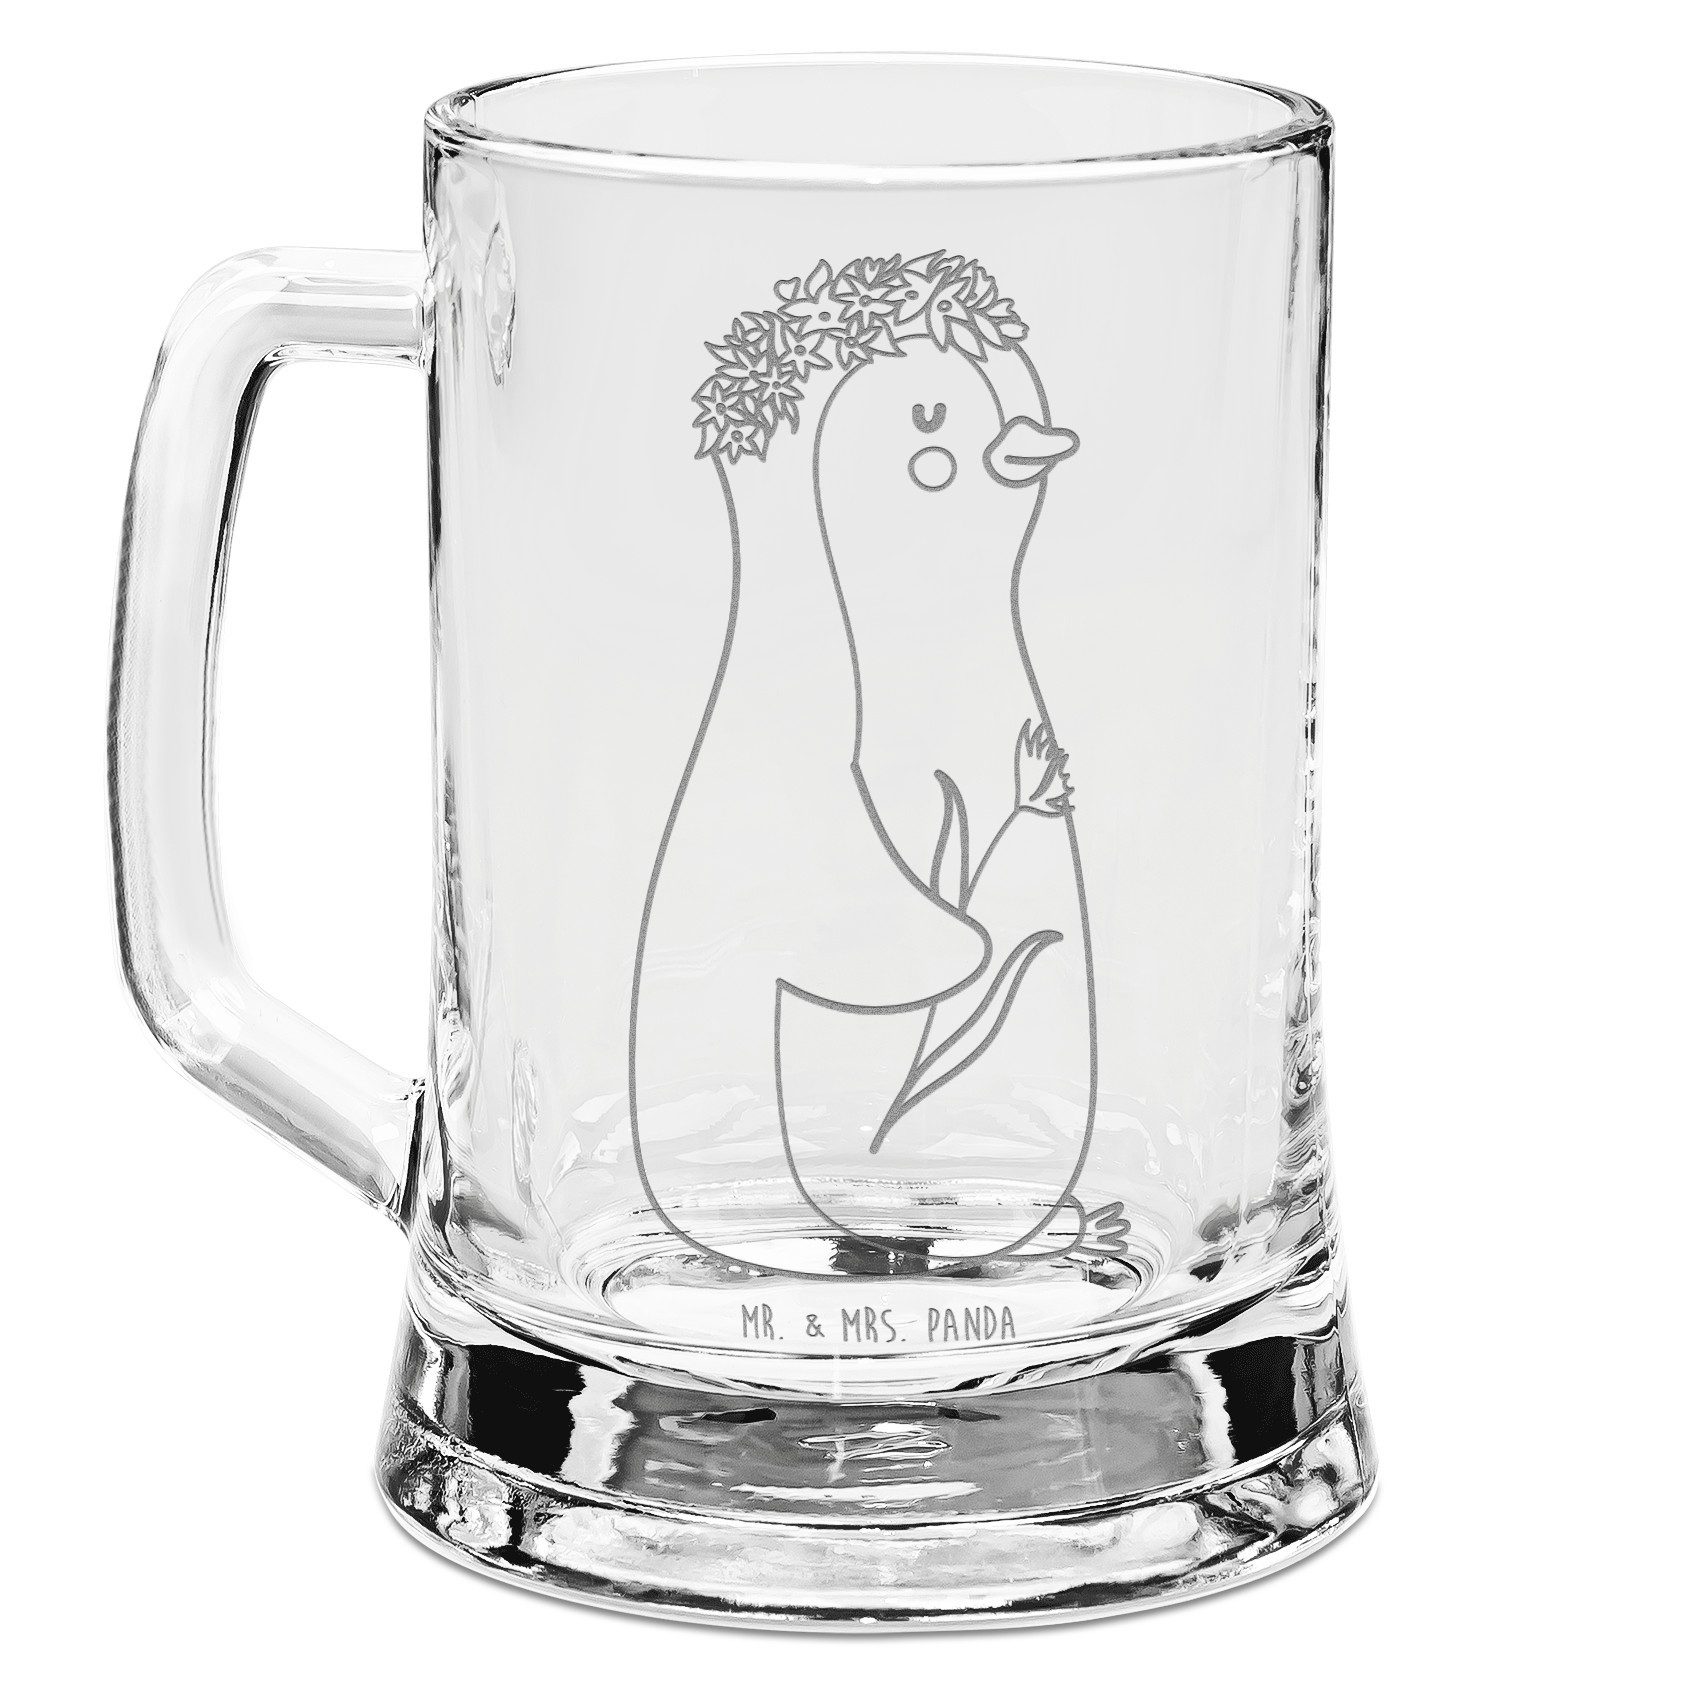 Mr. & Mrs. Panda Bierkrug Pinguin Blumen - Transparent - Geschenk, Bierkrug Glas, Bierkrug, Bie, Premium Glas, Auffällige Gravur